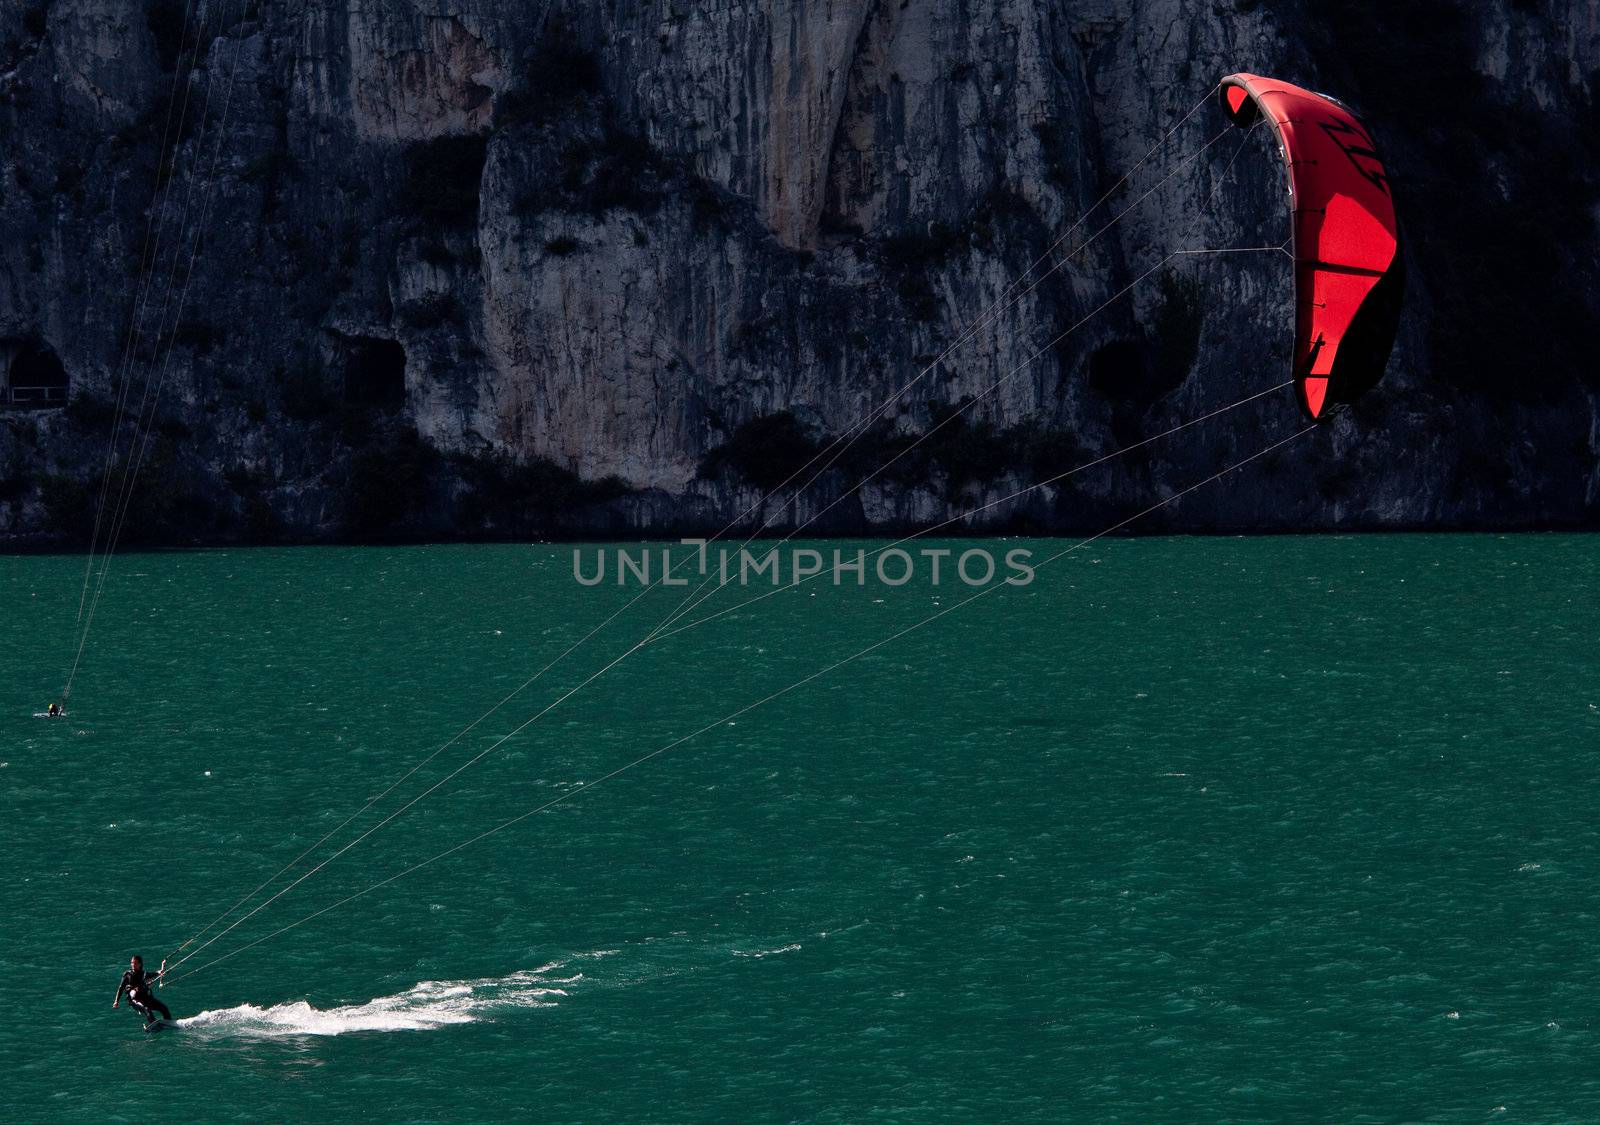 Parasurfing on Lake Garda by steheap